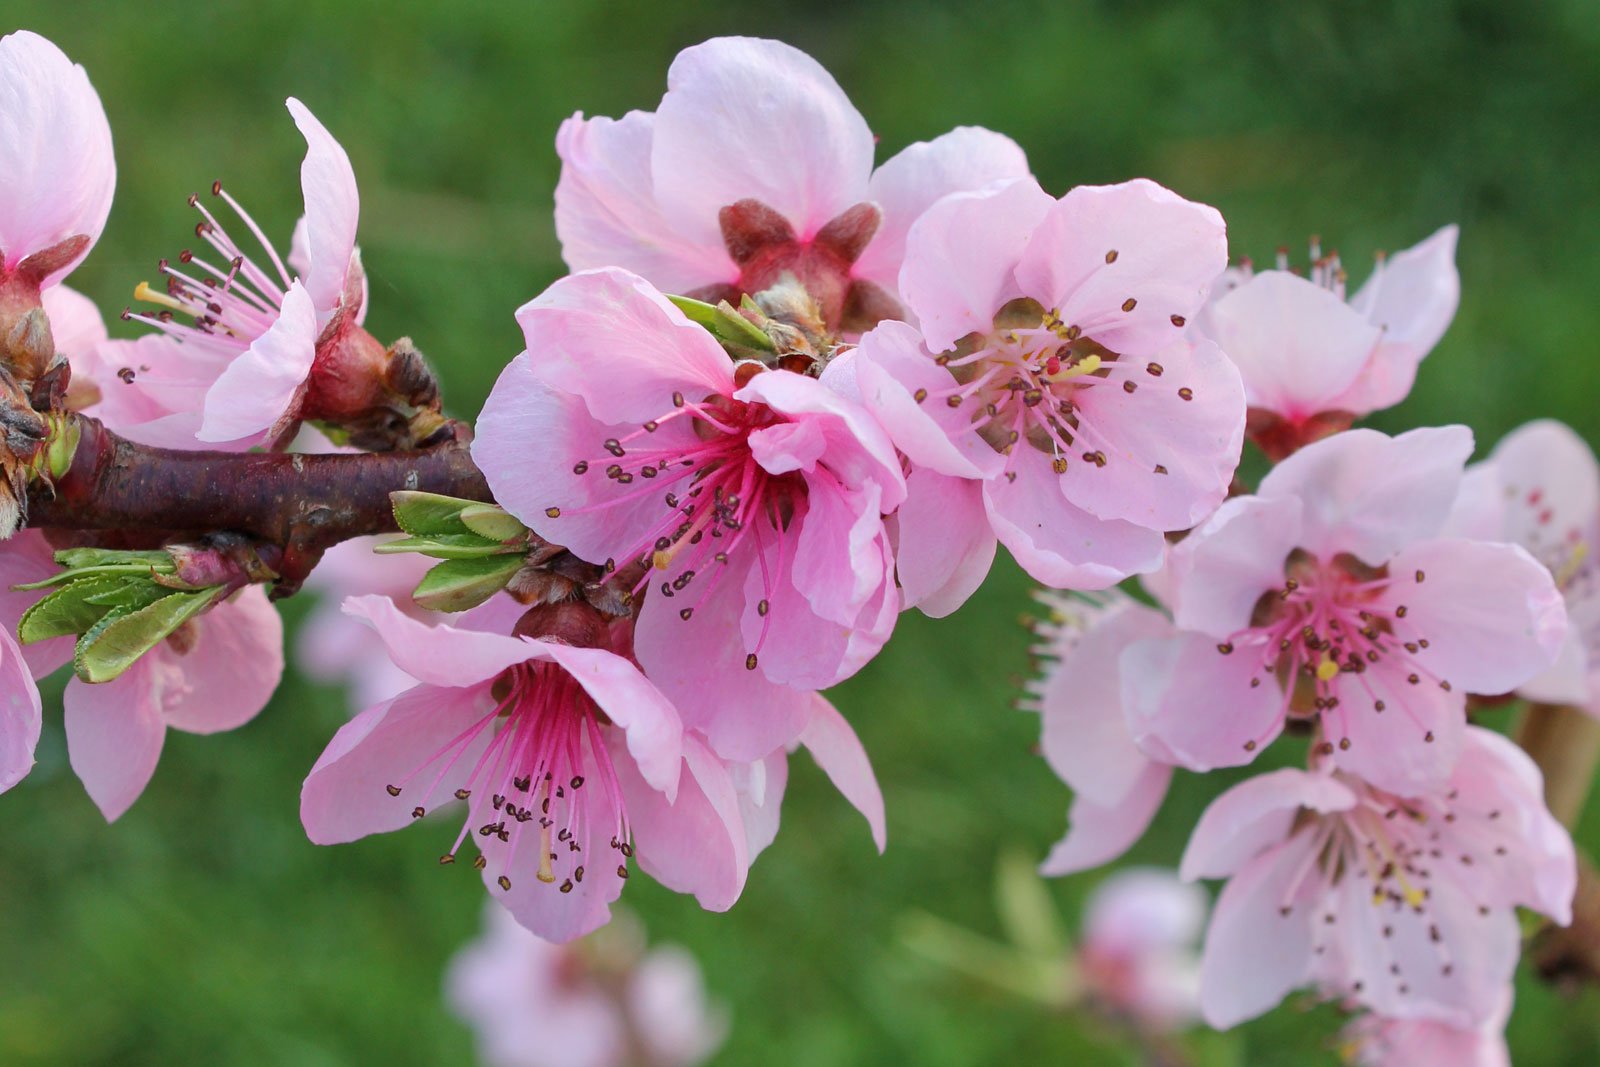 Hoa đào có thể được gọi là peach blossom trong tiếng Anh không? Nếu có, tại sao lại không sử dụng từ peach flower?
